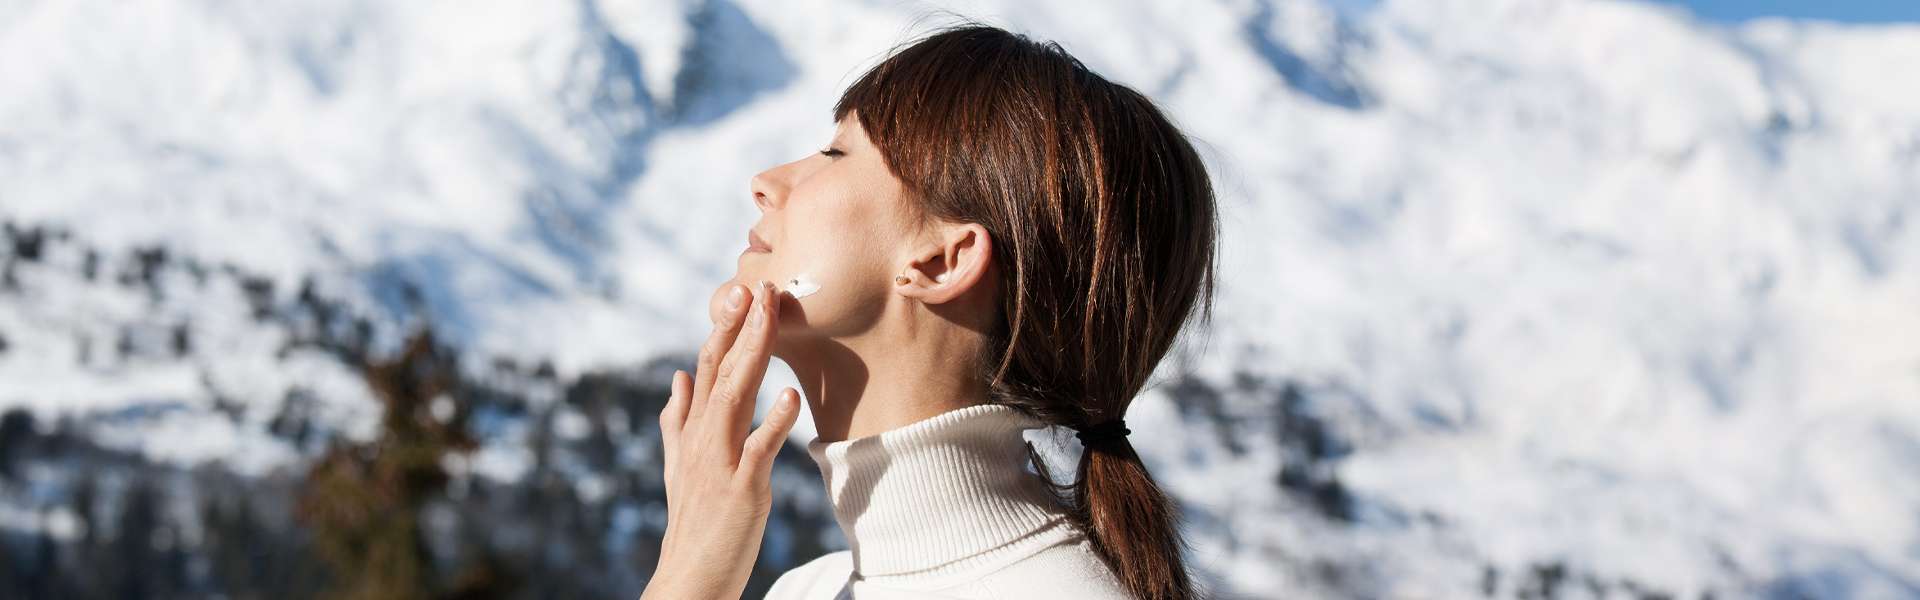 Schutz der Haut vor den Unbilden des Winters: Kosmetik und Ernährung